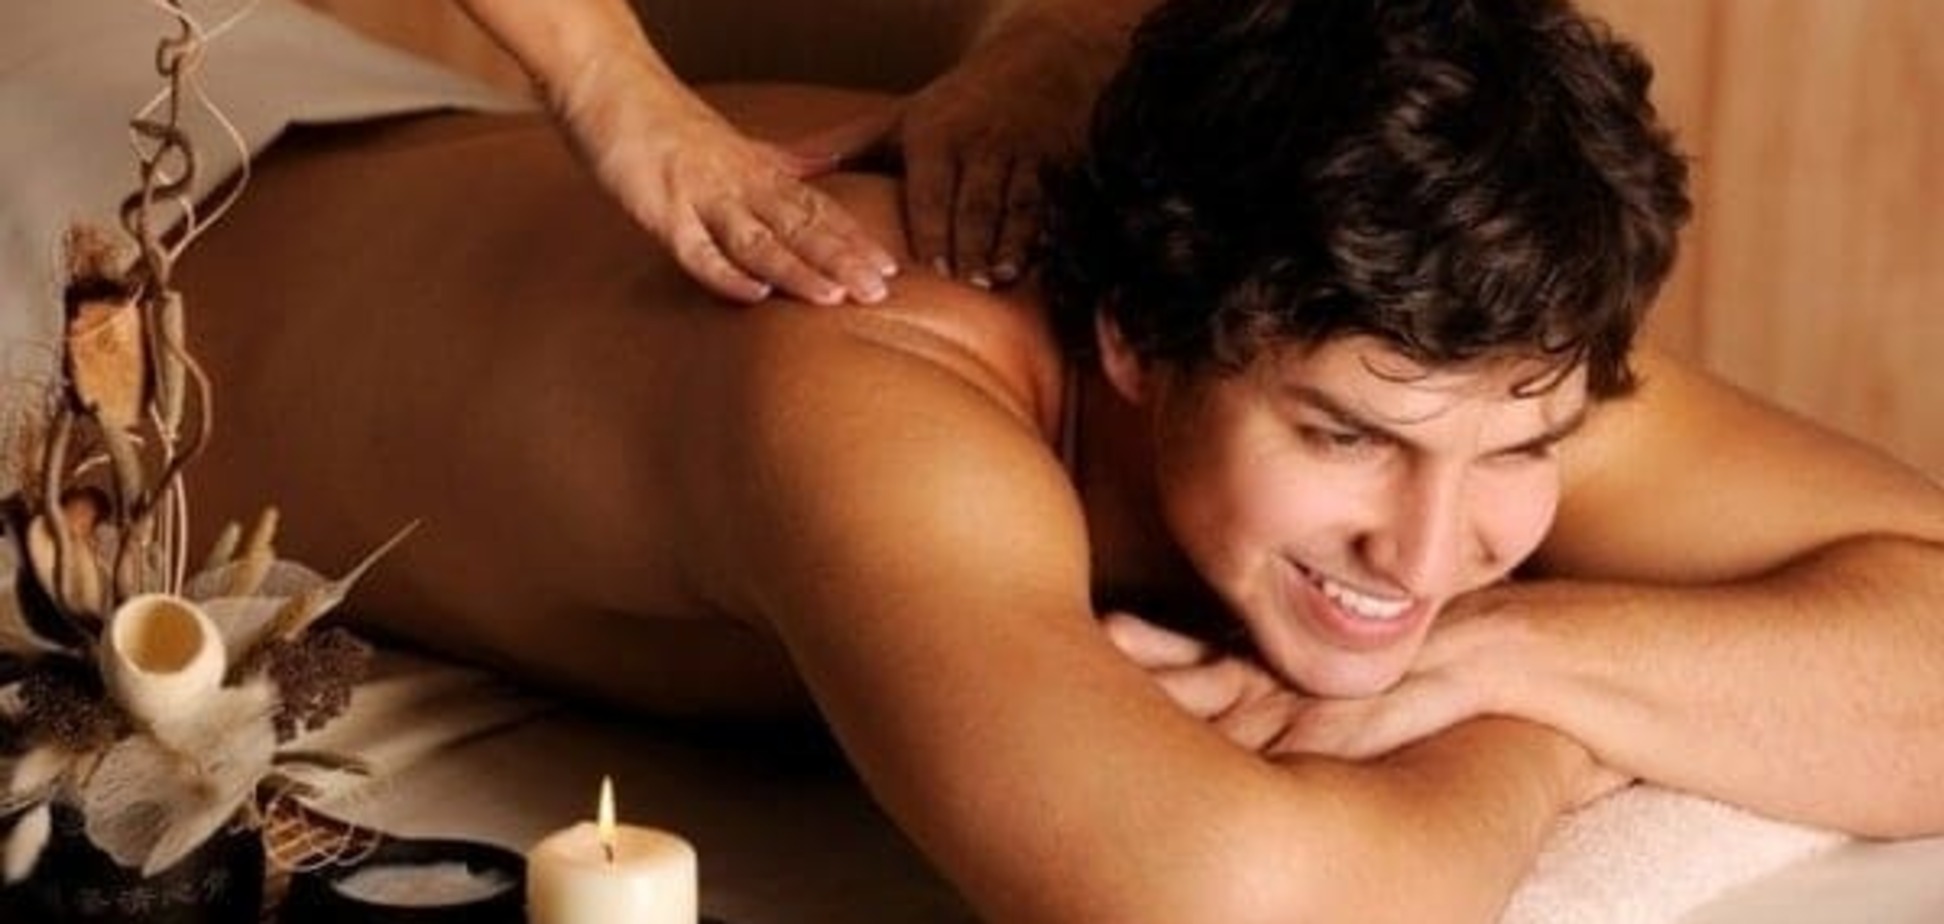 Жене на заметку: как правильно делать эротический массаж